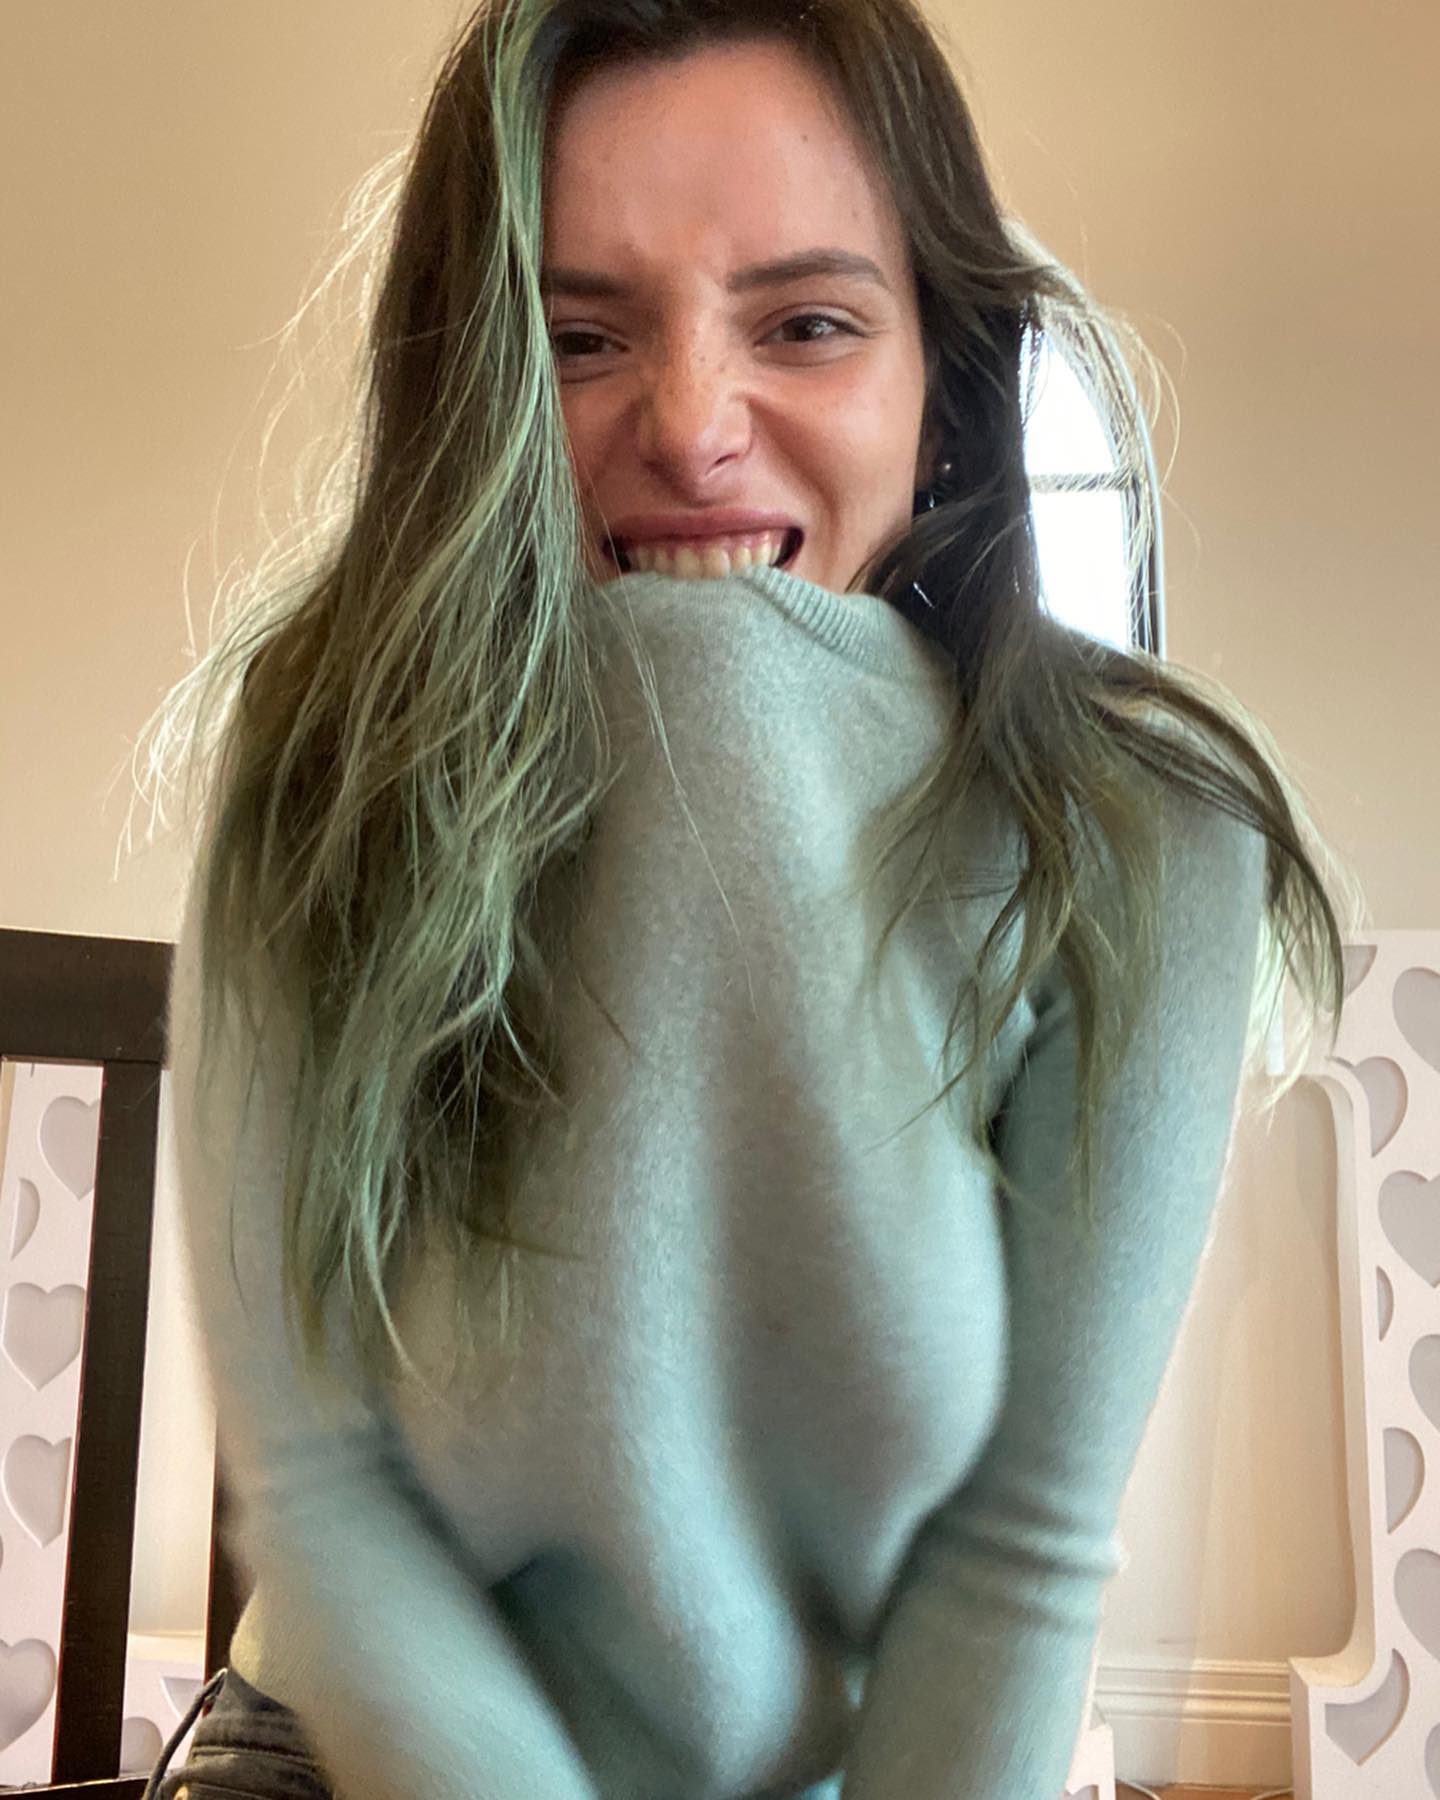 Fotos n°7 : Bella Thorne empareja su cabello con su suter!